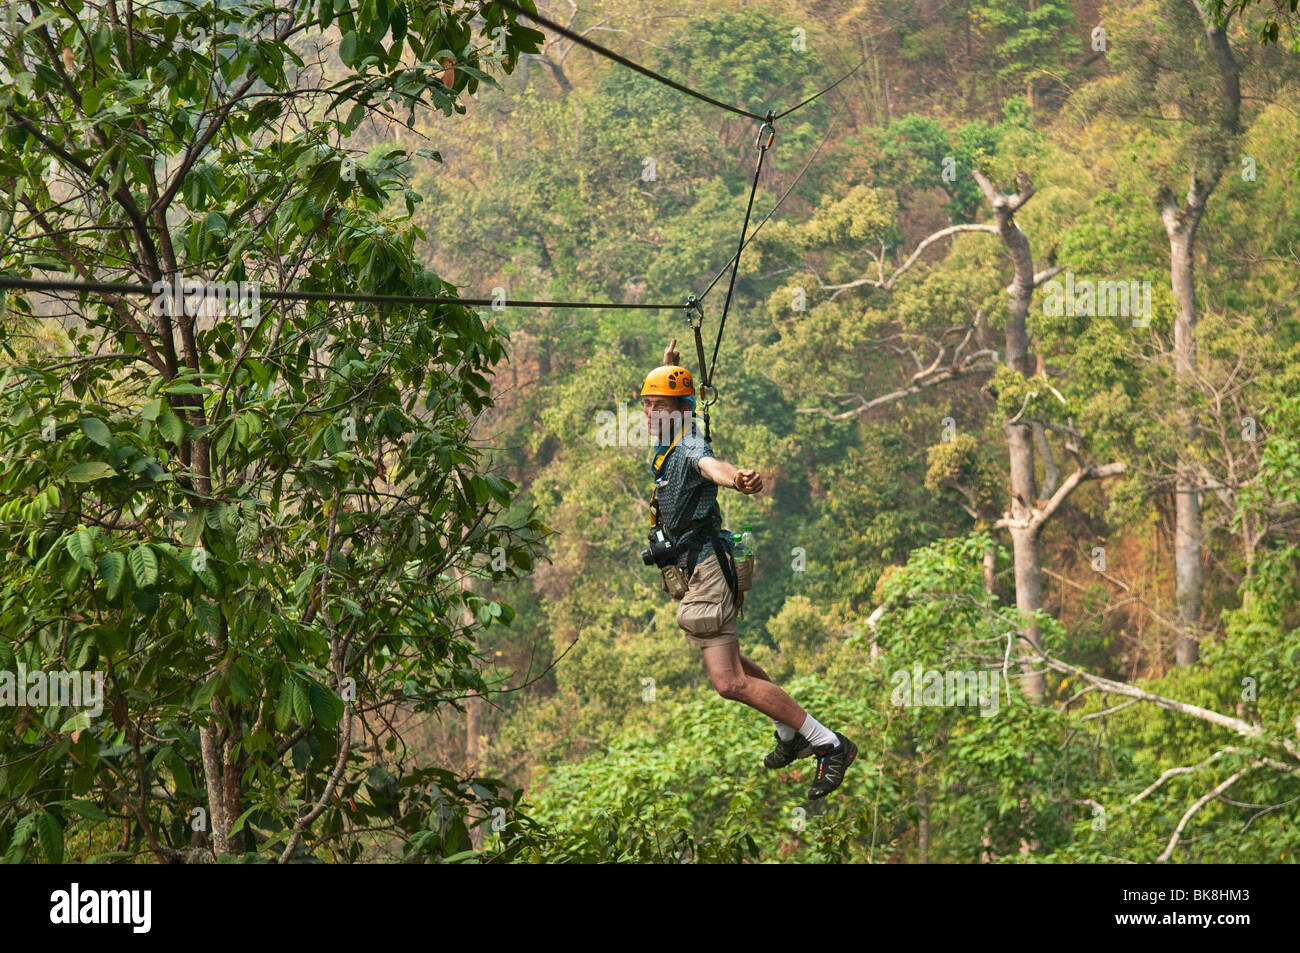 Vol jungle zip line et forest canopy tour, Chiang Mai, Thaïlande. Banque D'Images